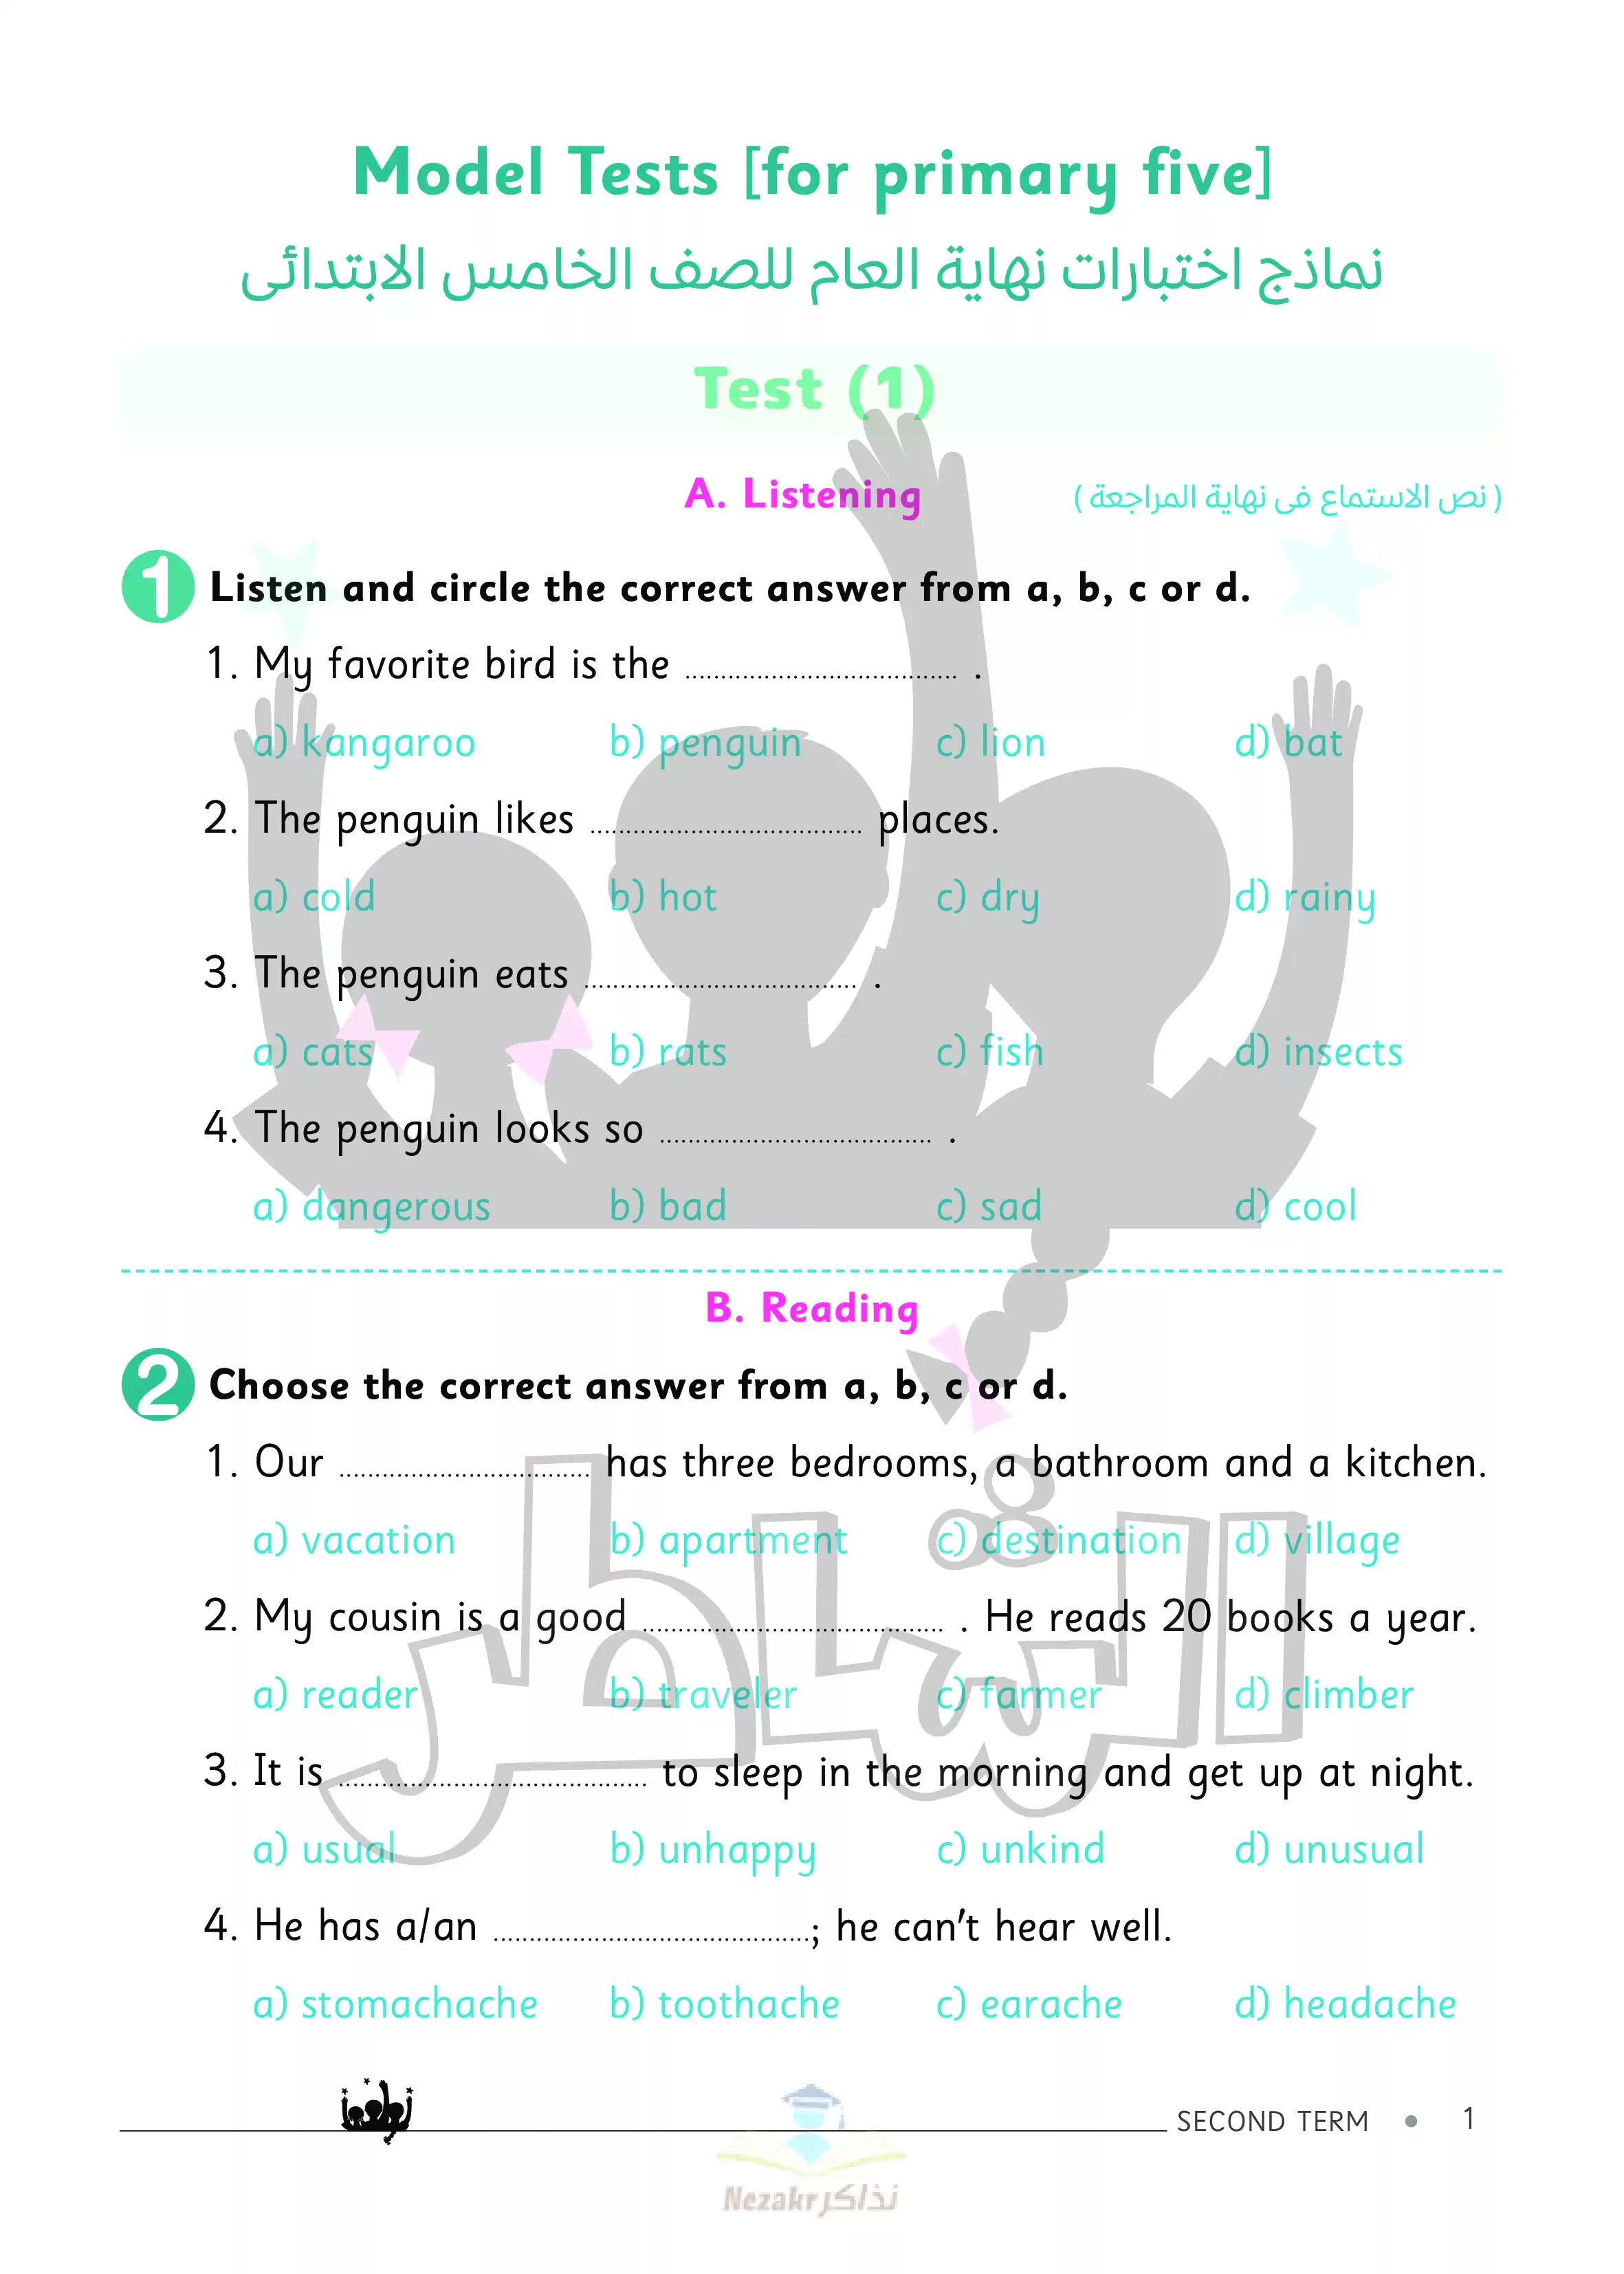 تحميل اختبارات الشاطر في اللغة الإنجليزية Connect5 للصف الخامس الابتدائي الفصل الدراسي الثاني